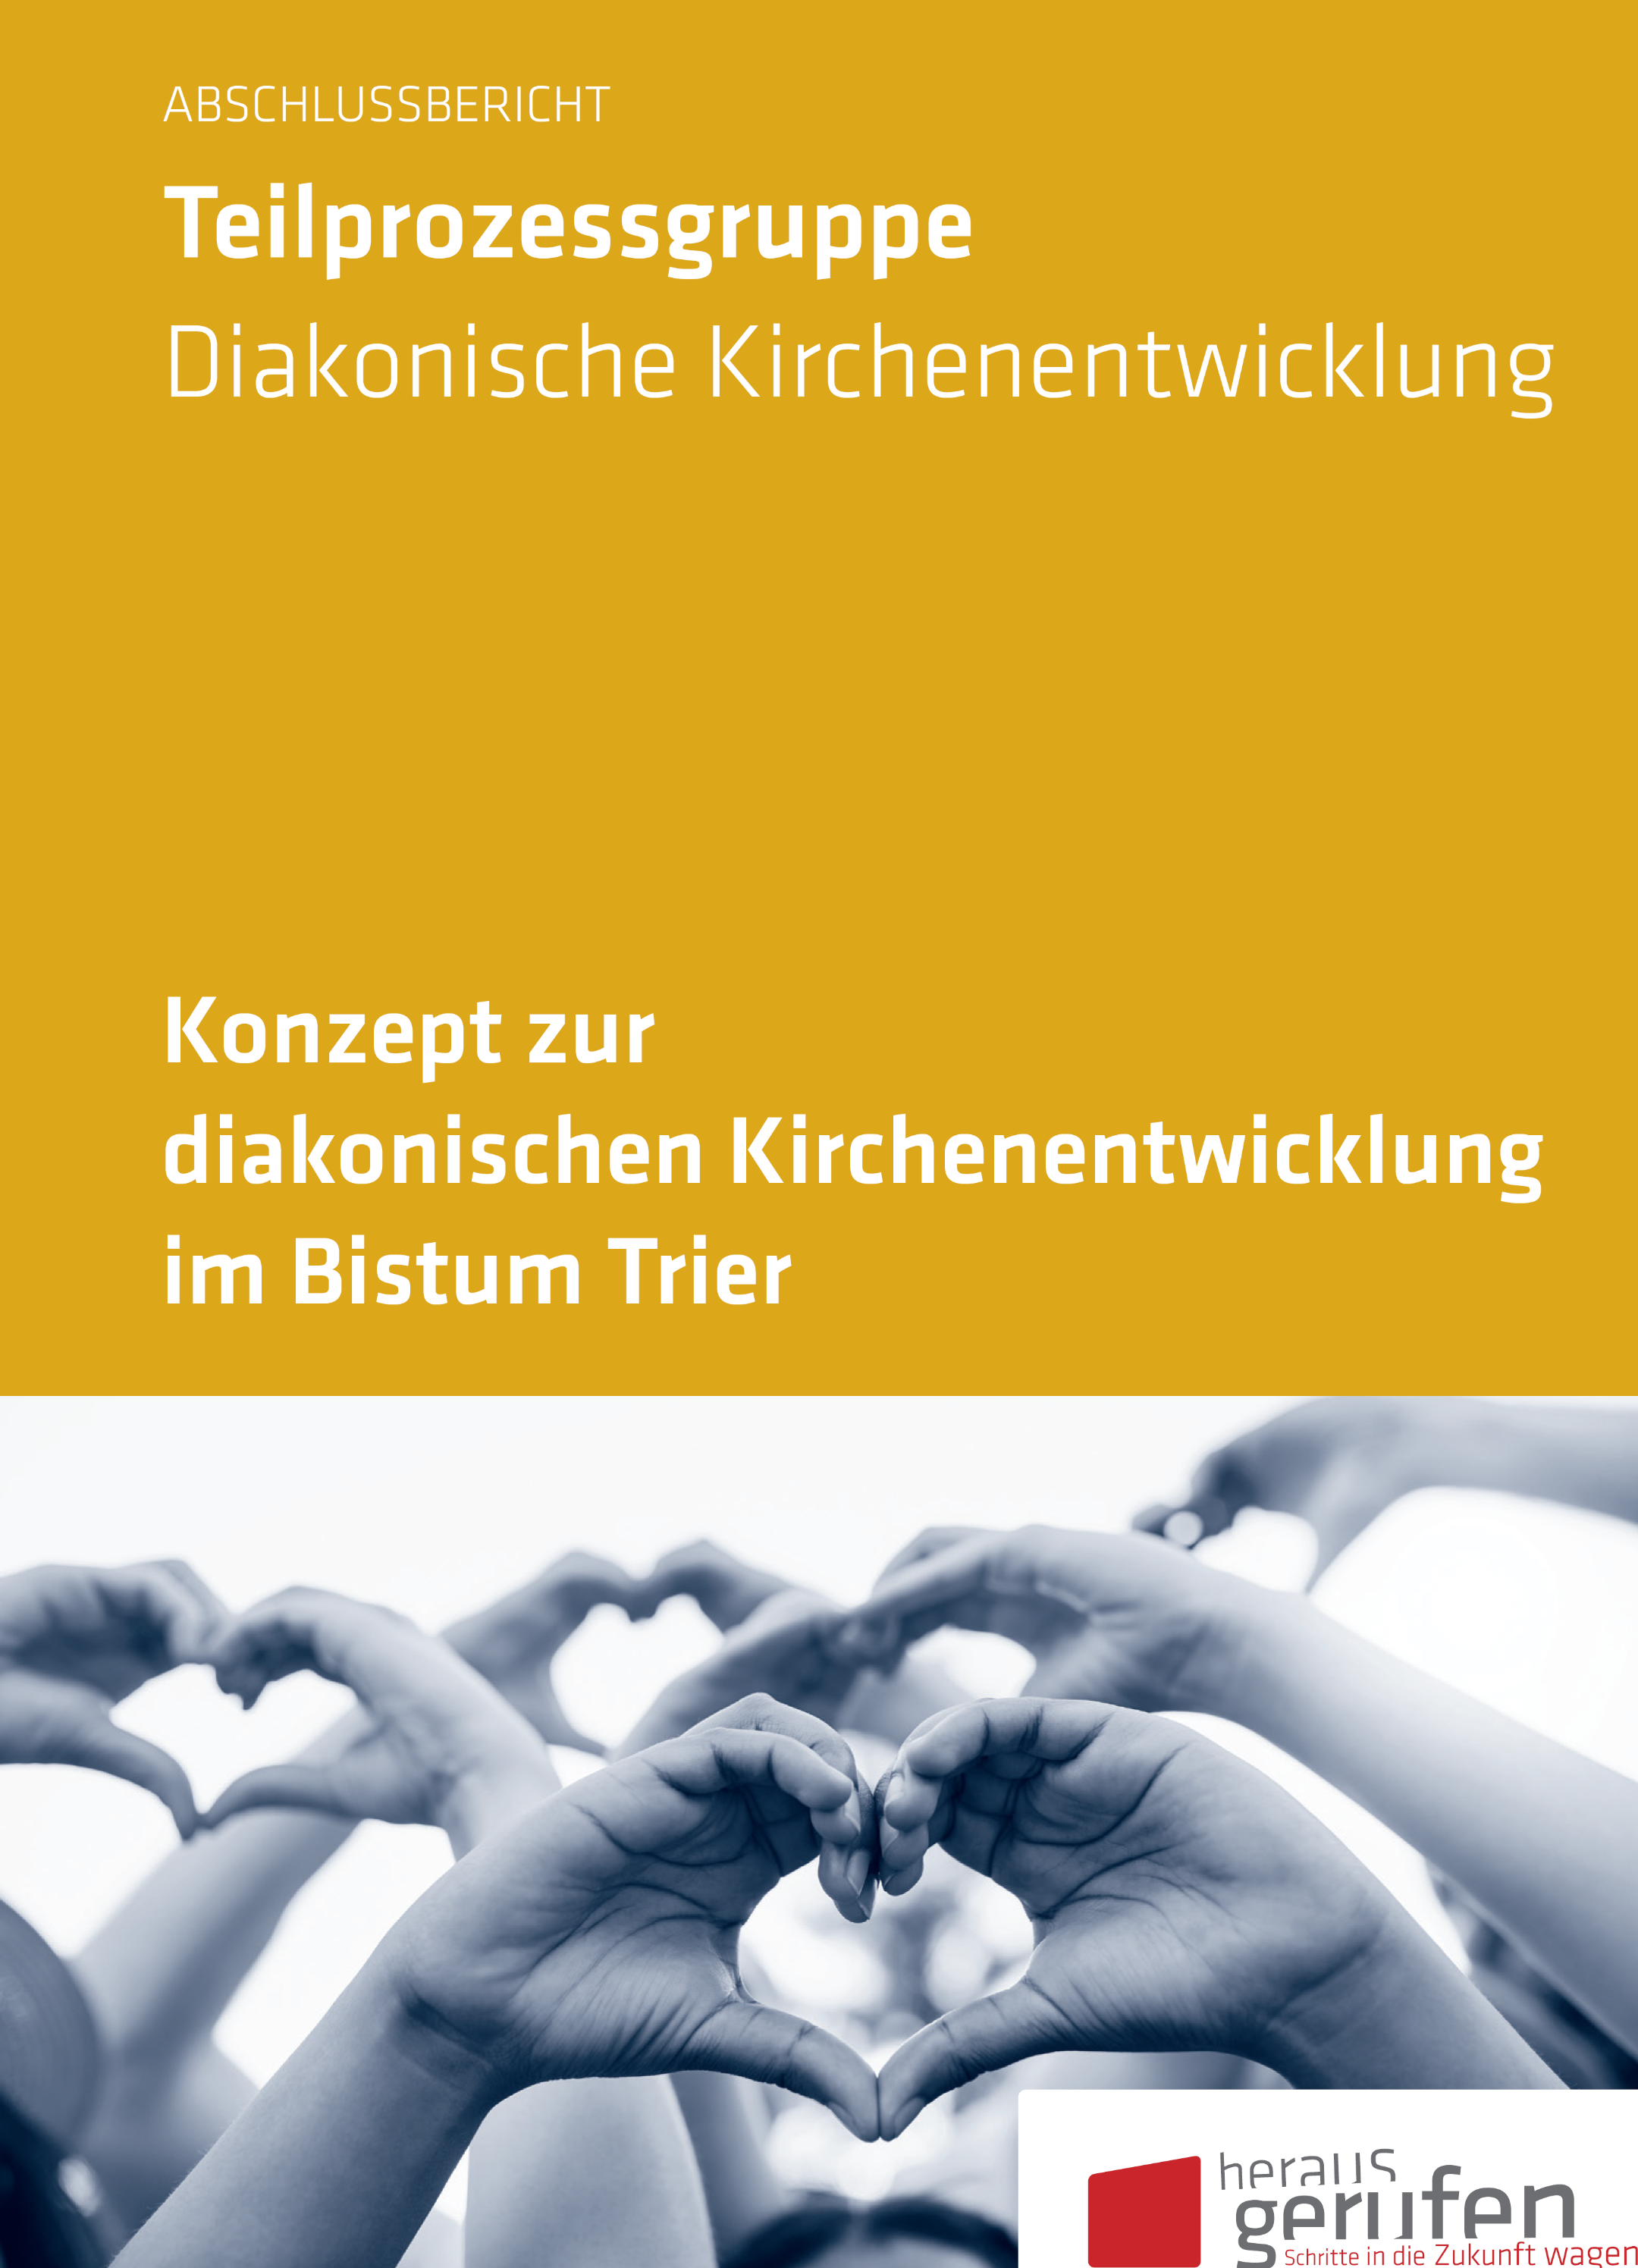 Konzept zur diakonischen Kirchenentwicklung im Bistum Trier, Titel